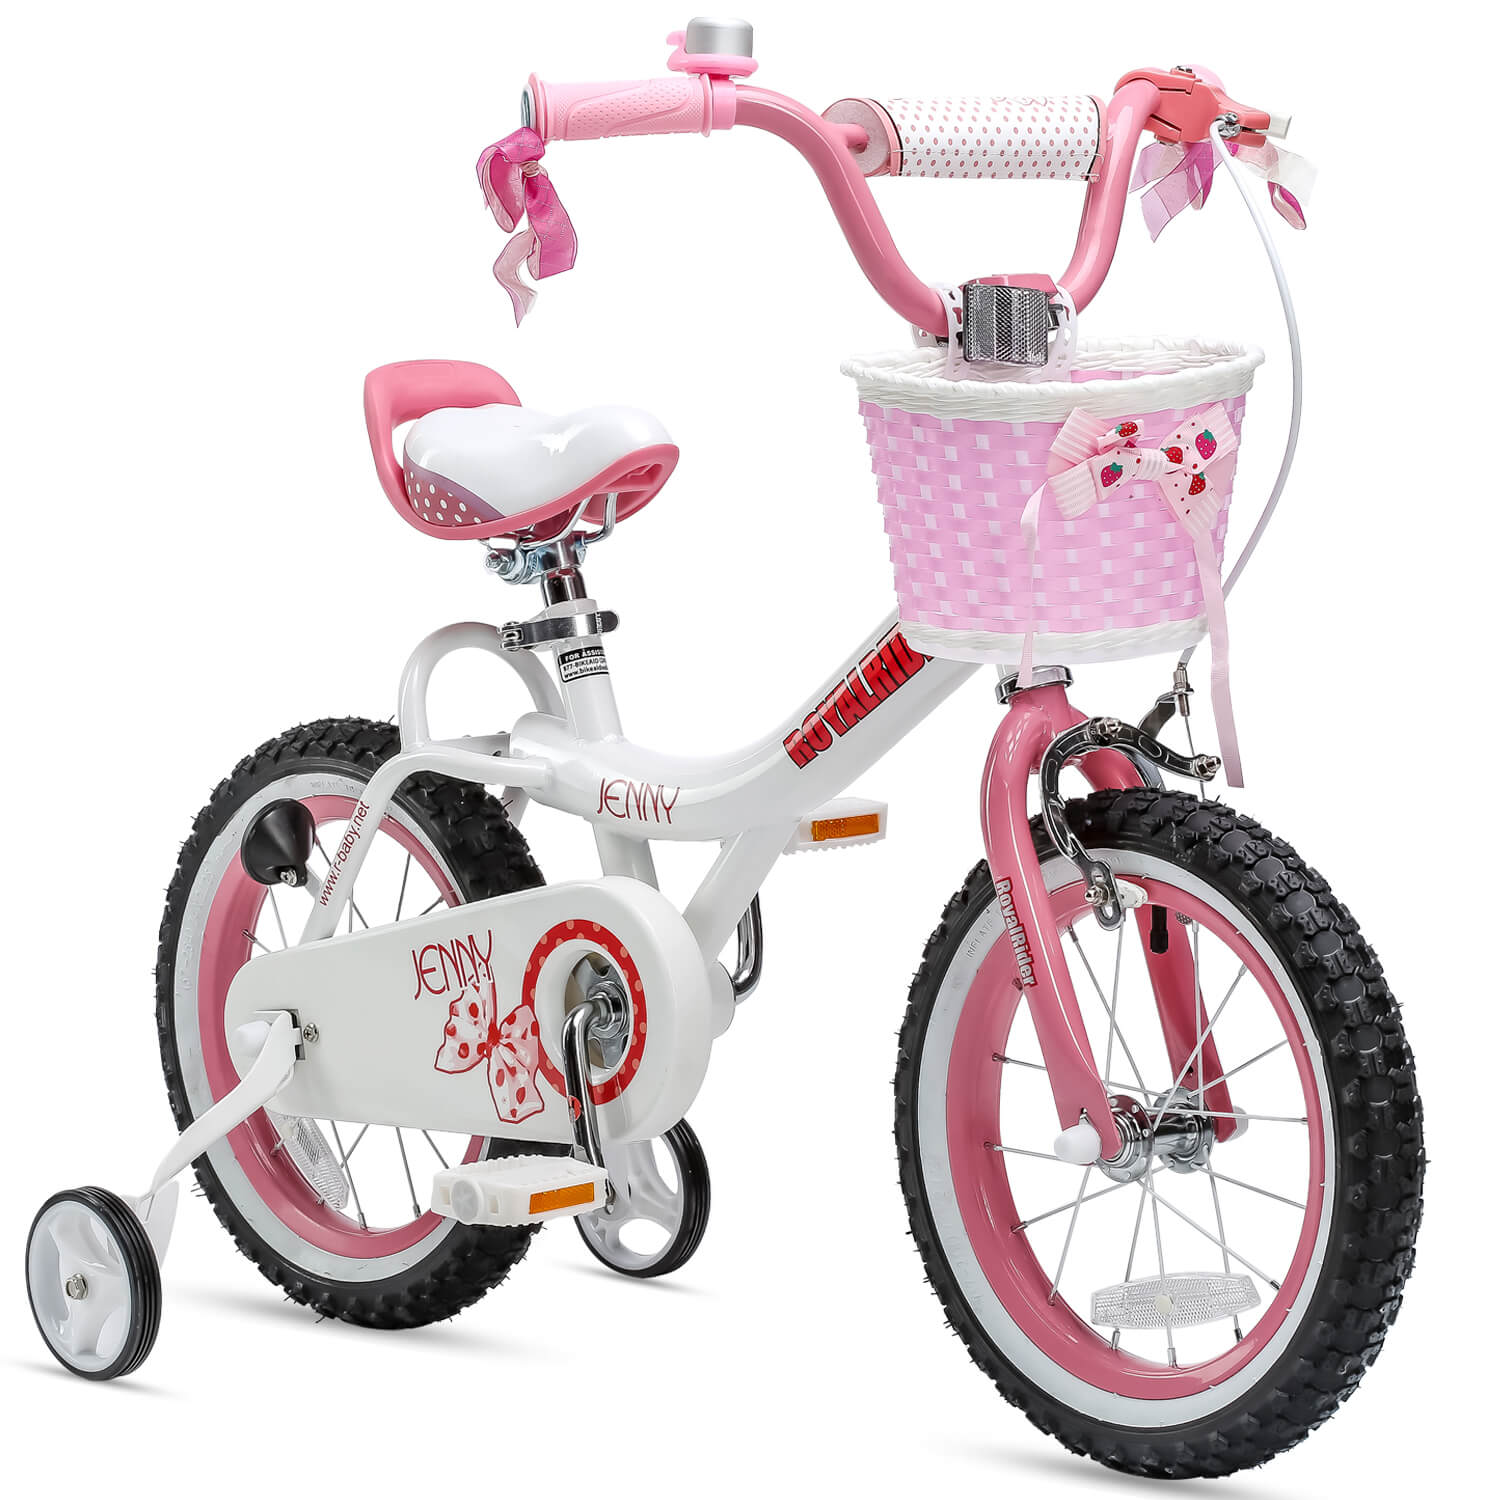 RoyalBaby kids bike girls bike jenny 